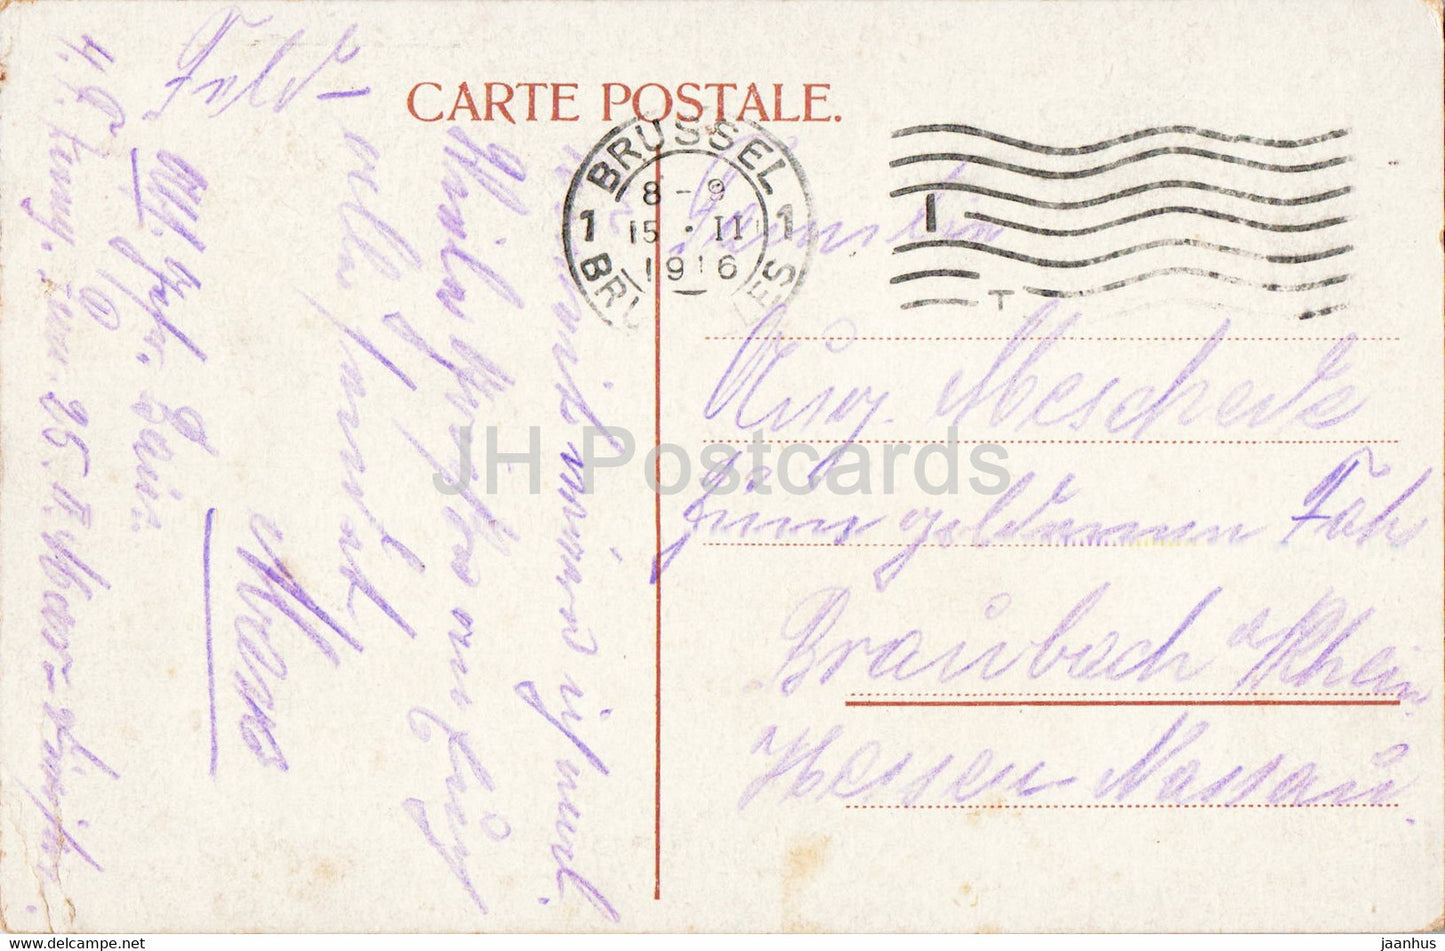 Brüssel - Brüssel - Grand Place - Maison du Roi et des Corporations - alte Postkarte - 1916 - Belgien - gebraucht